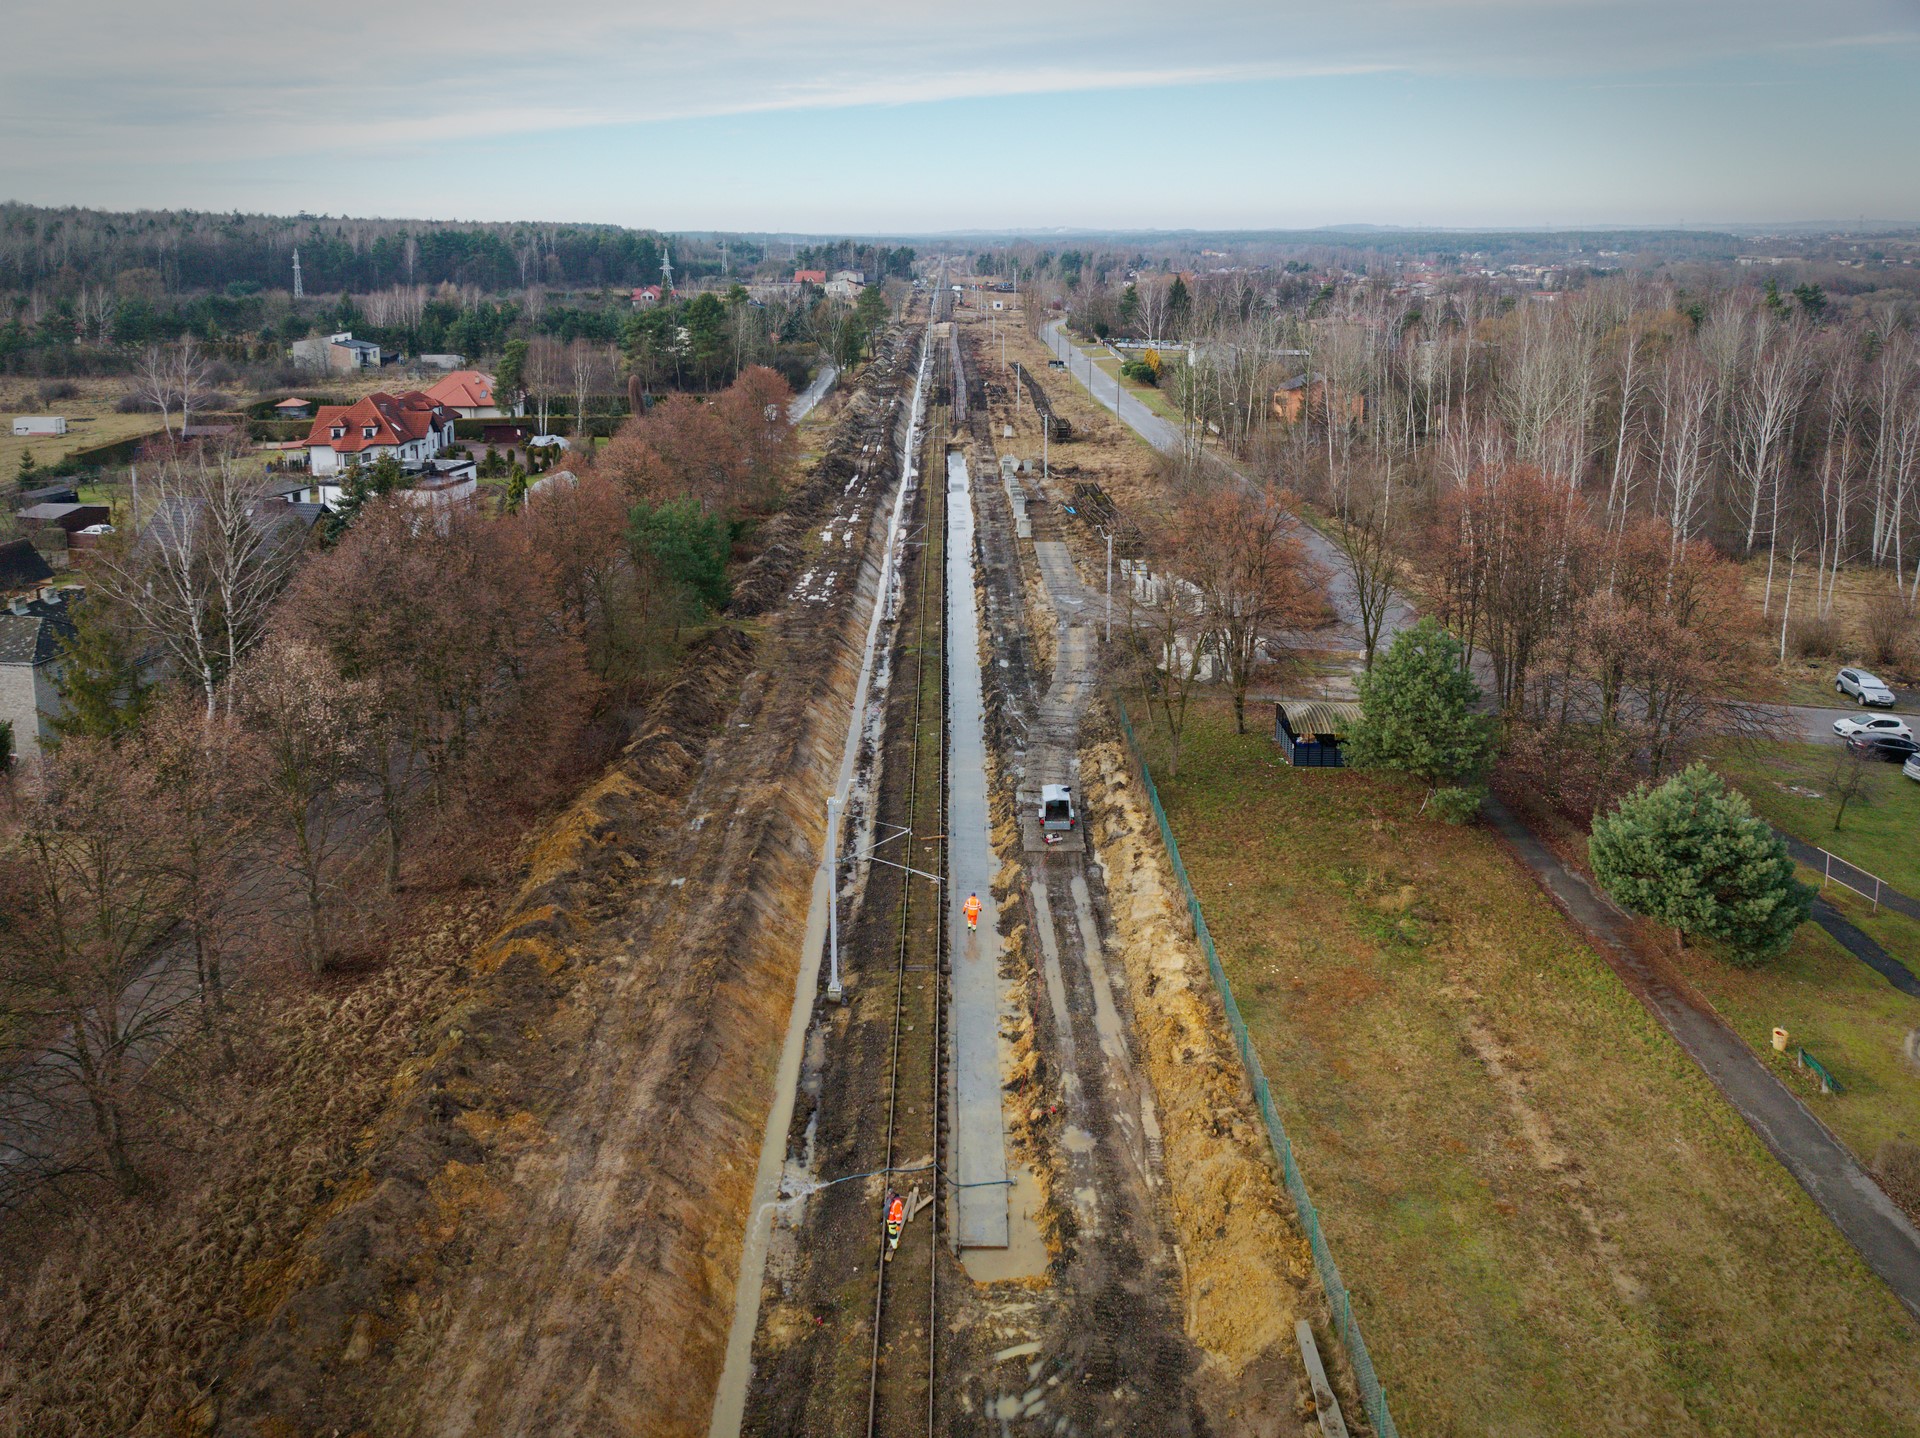 Zdjęcie: widok z góry na budowę peronu.